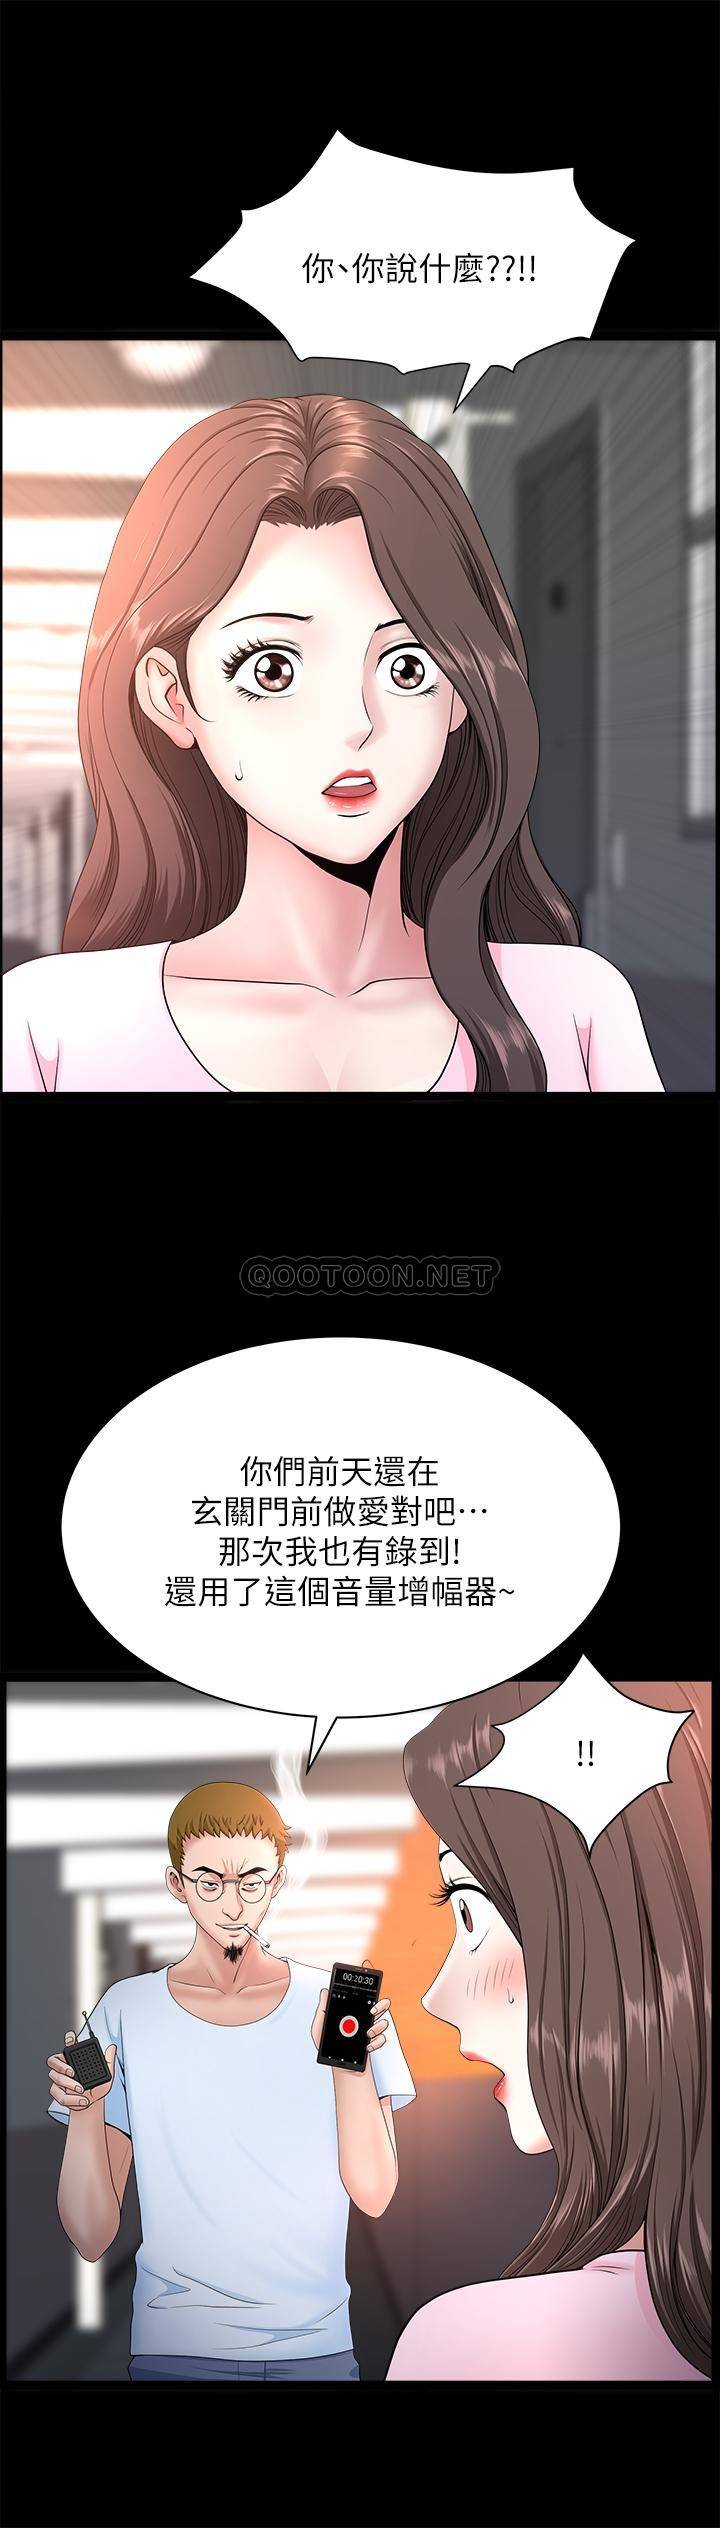 韩国污漫画 雙妻生活 第26话-邻居的变tài要求 9